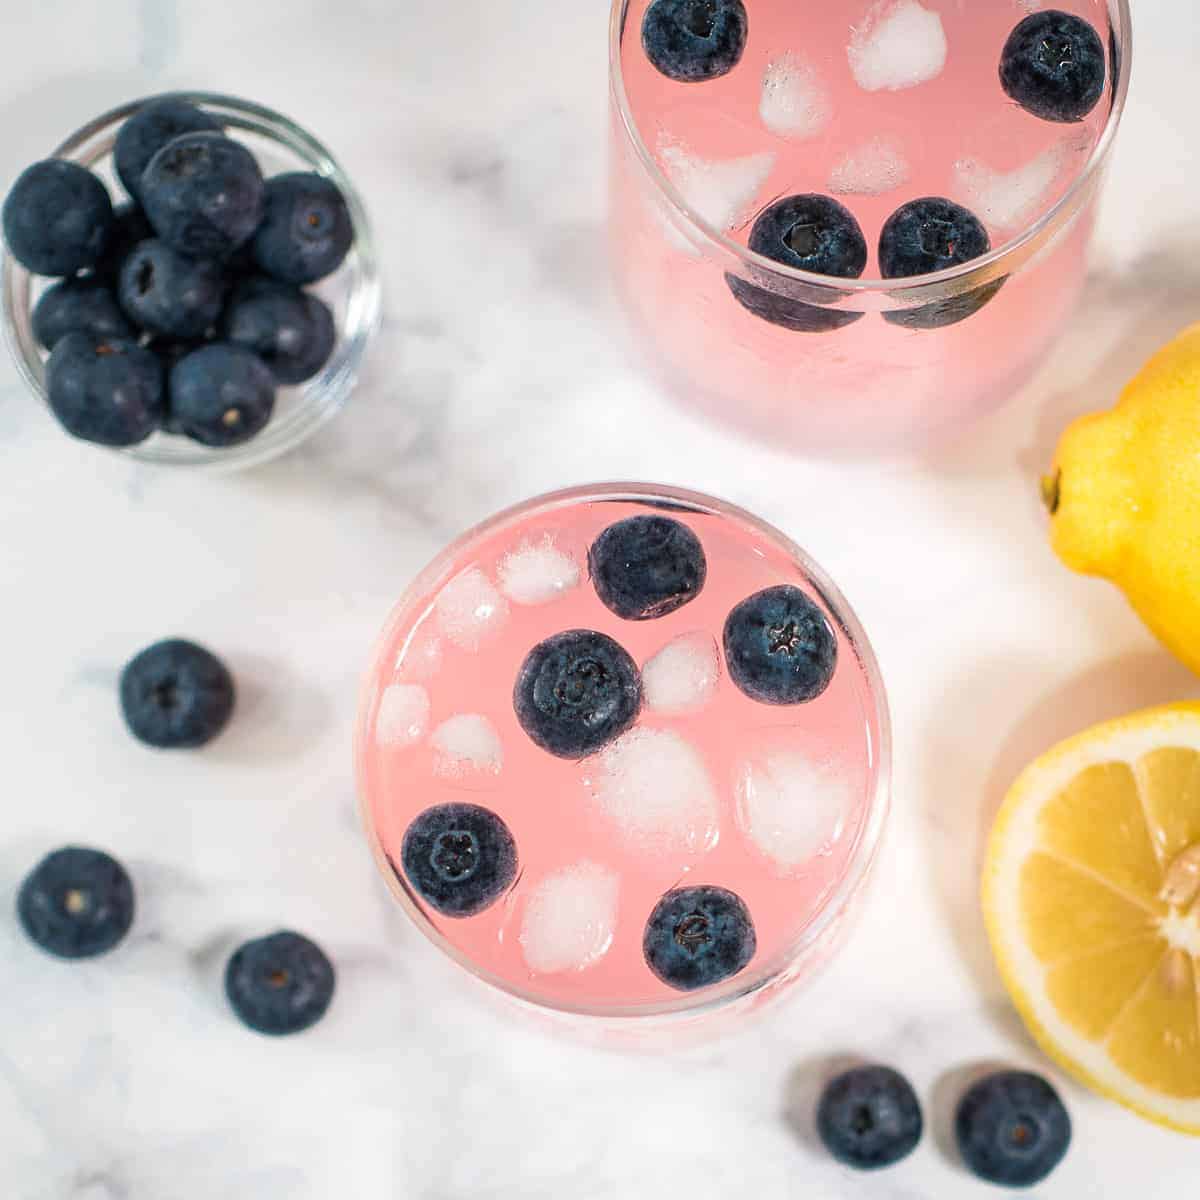 6. Pretty in Pink Blueberry Lemonade